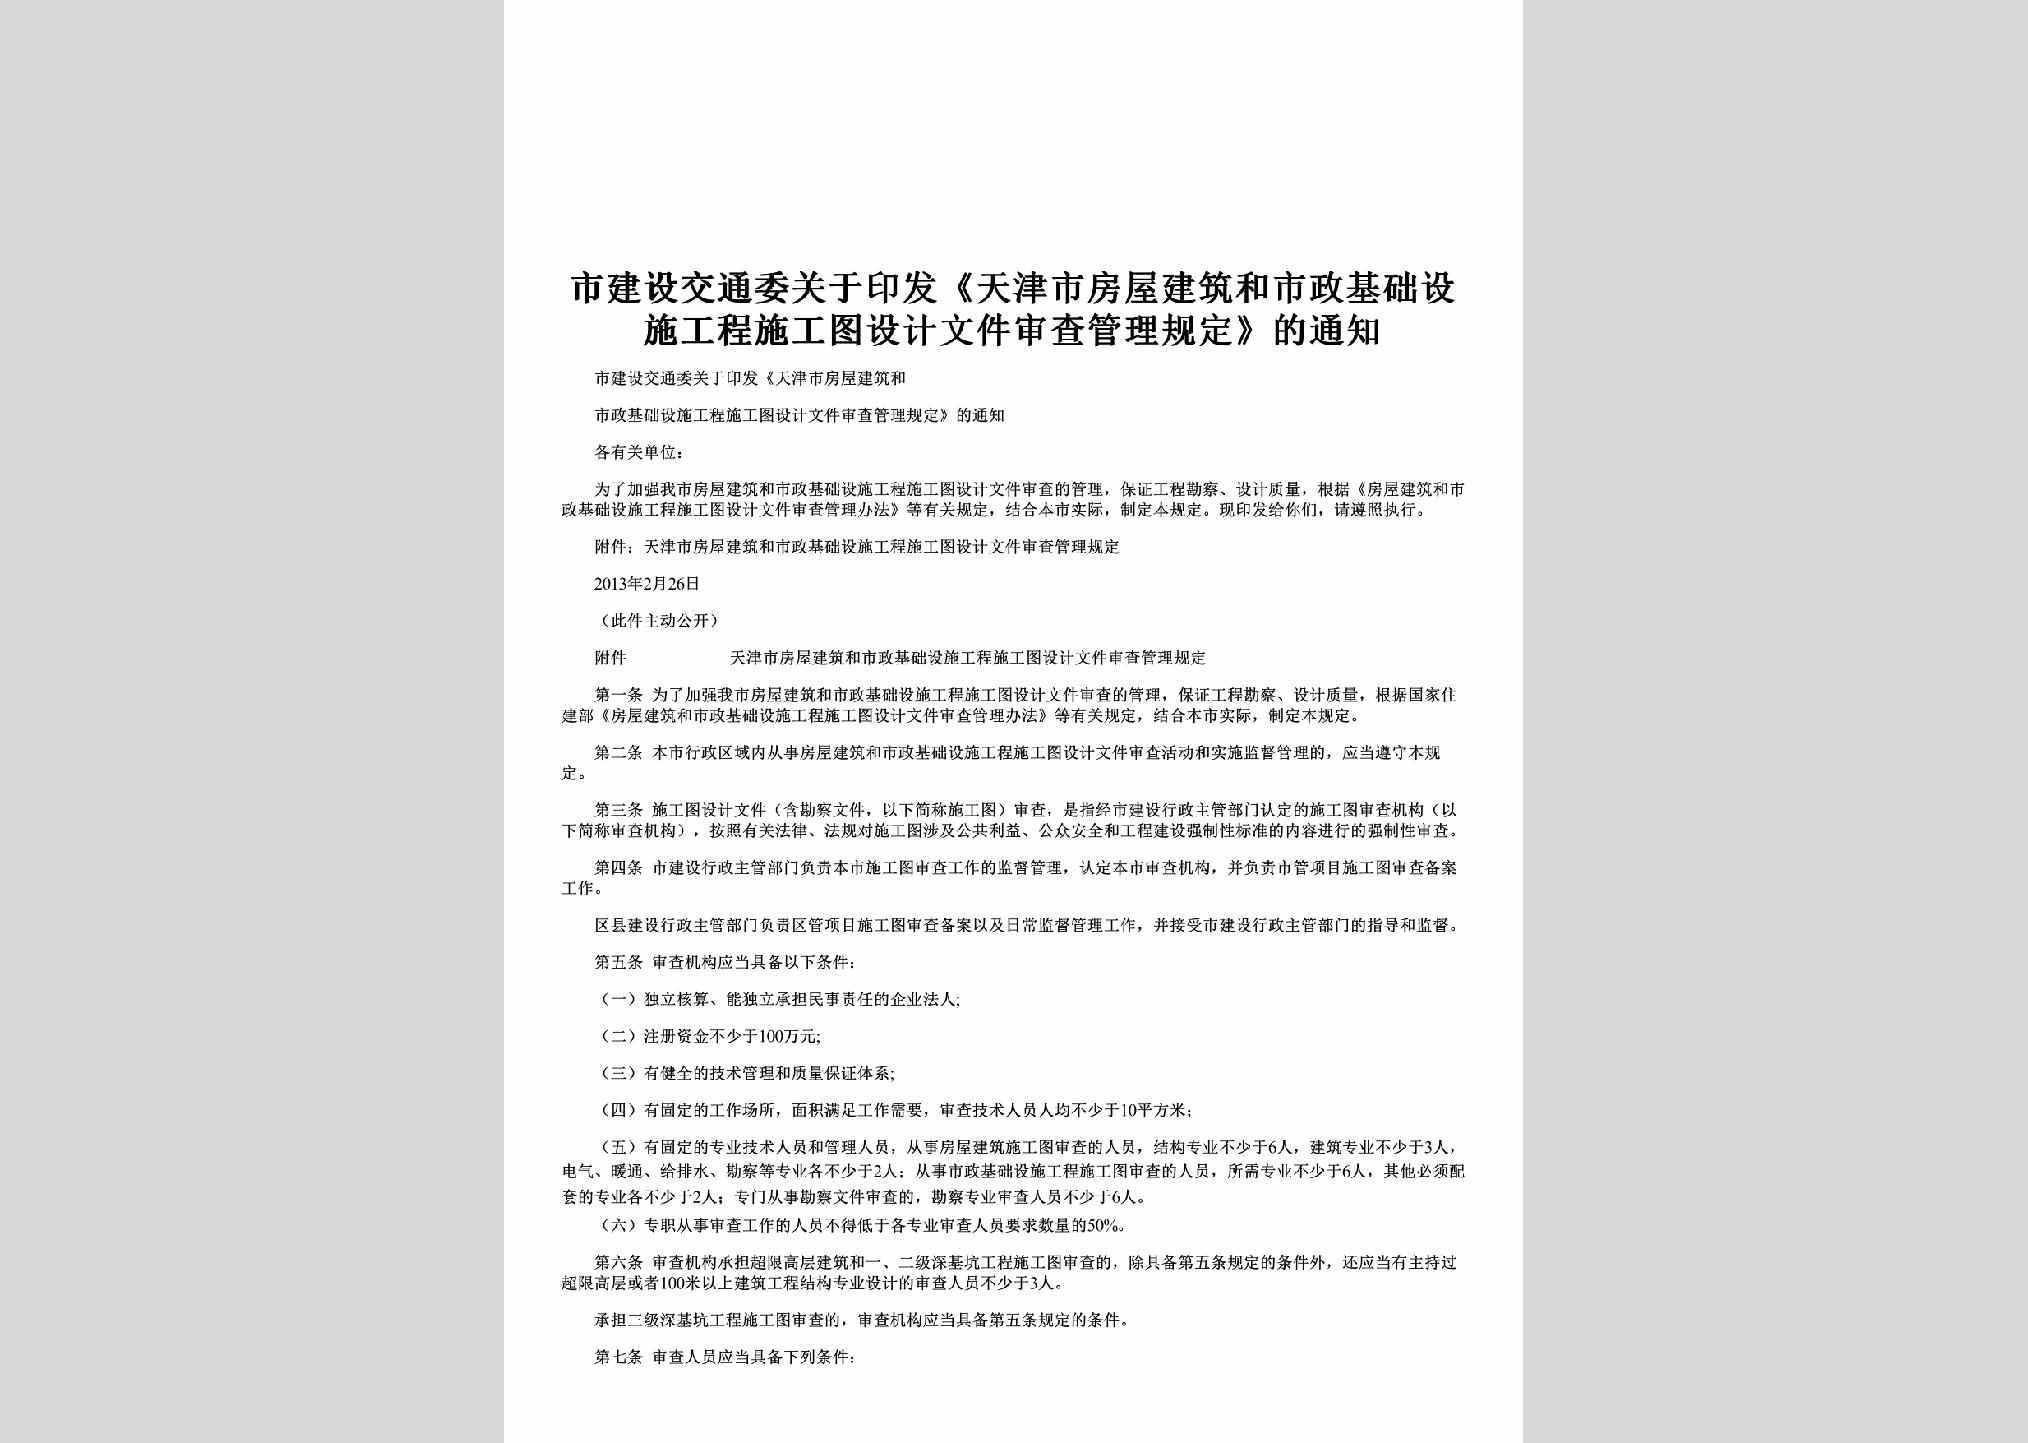 TJ-FWJZHSZ-2013：关于印发《天津市房屋建筑和市政基础设施工程施工图设计文件审查管理规